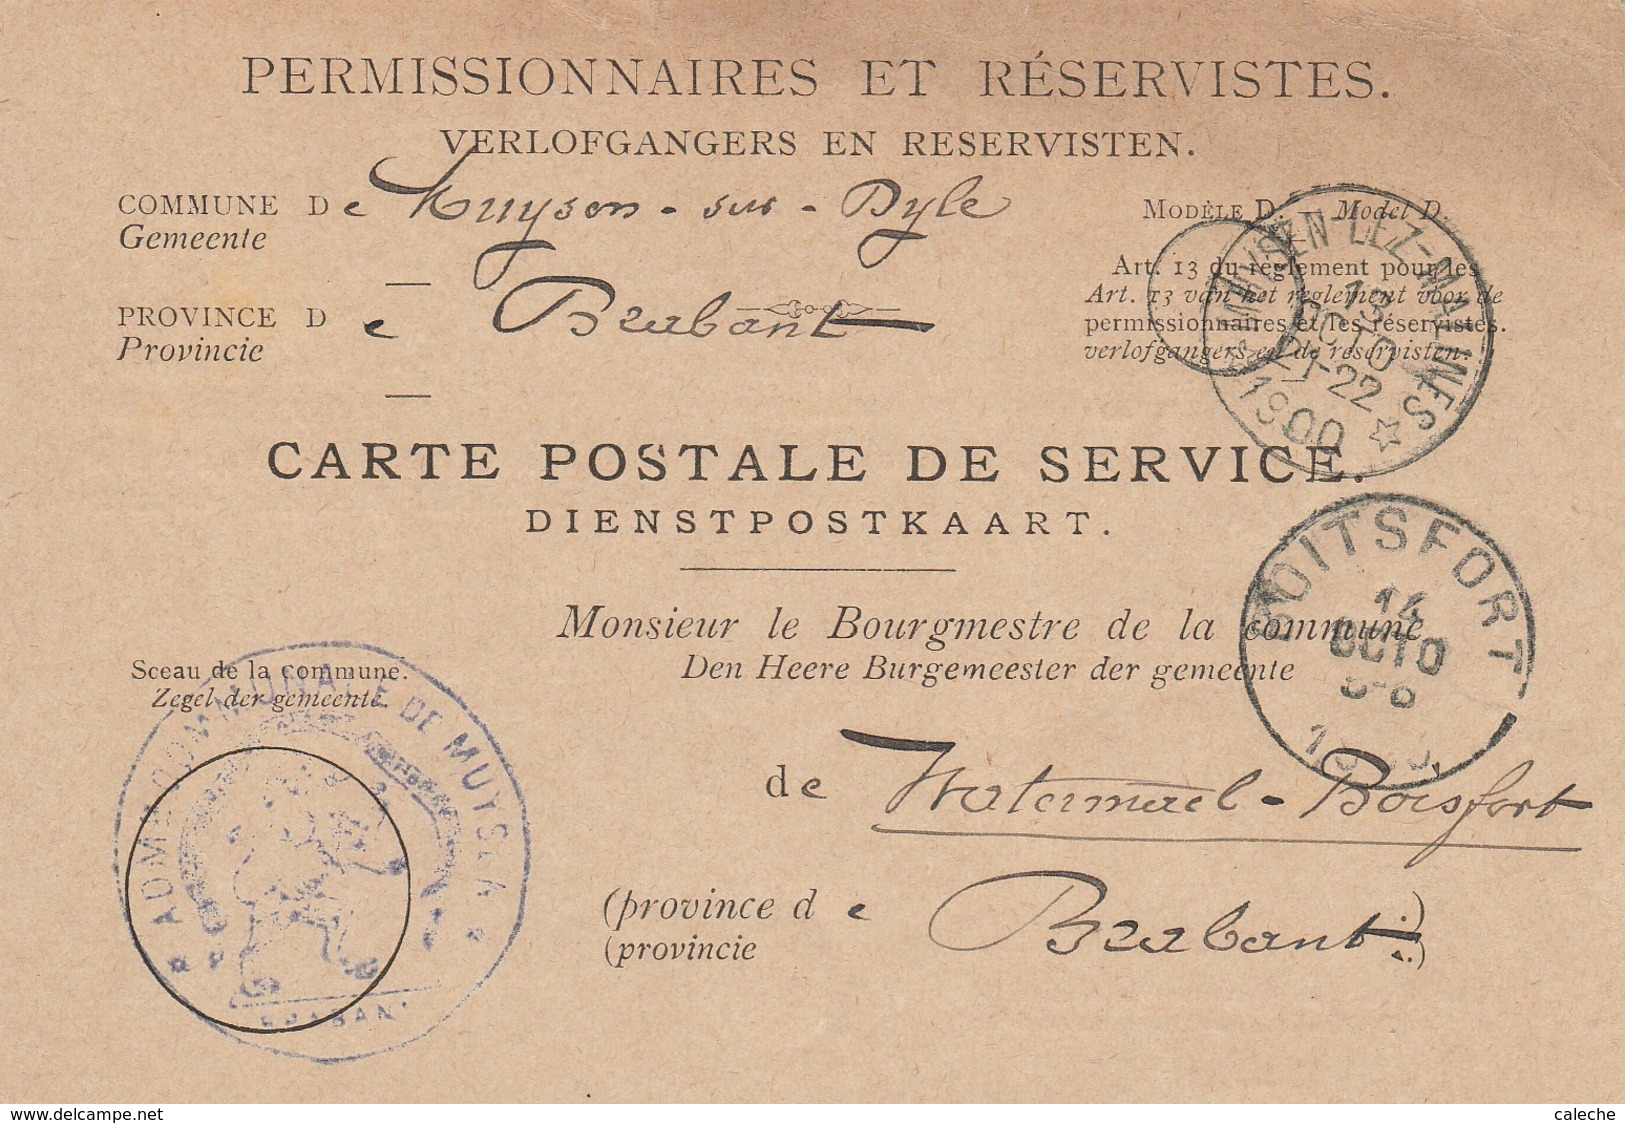 Carte Postale De Service Pour Permissionnaires Et Réservistes -armée -1900 - Relais Muysen-Lez-Malines - Sternenstempel